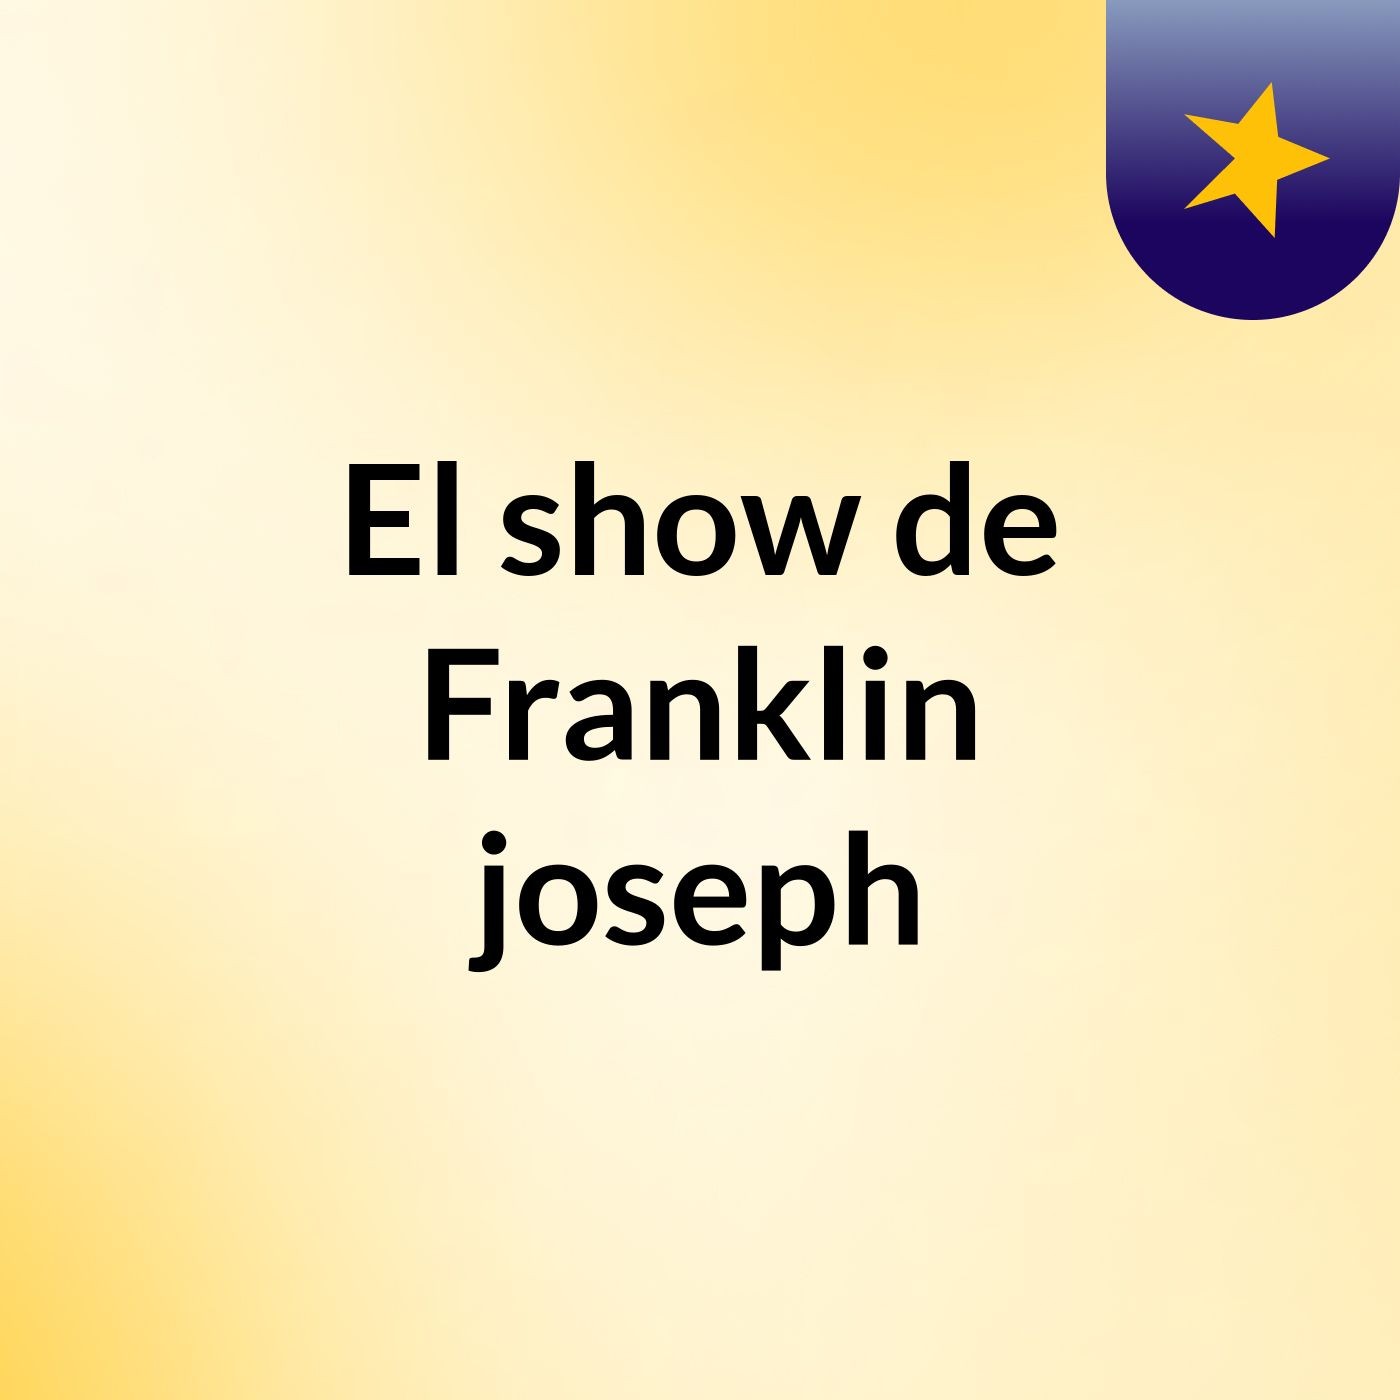 El show de Franklin joseph